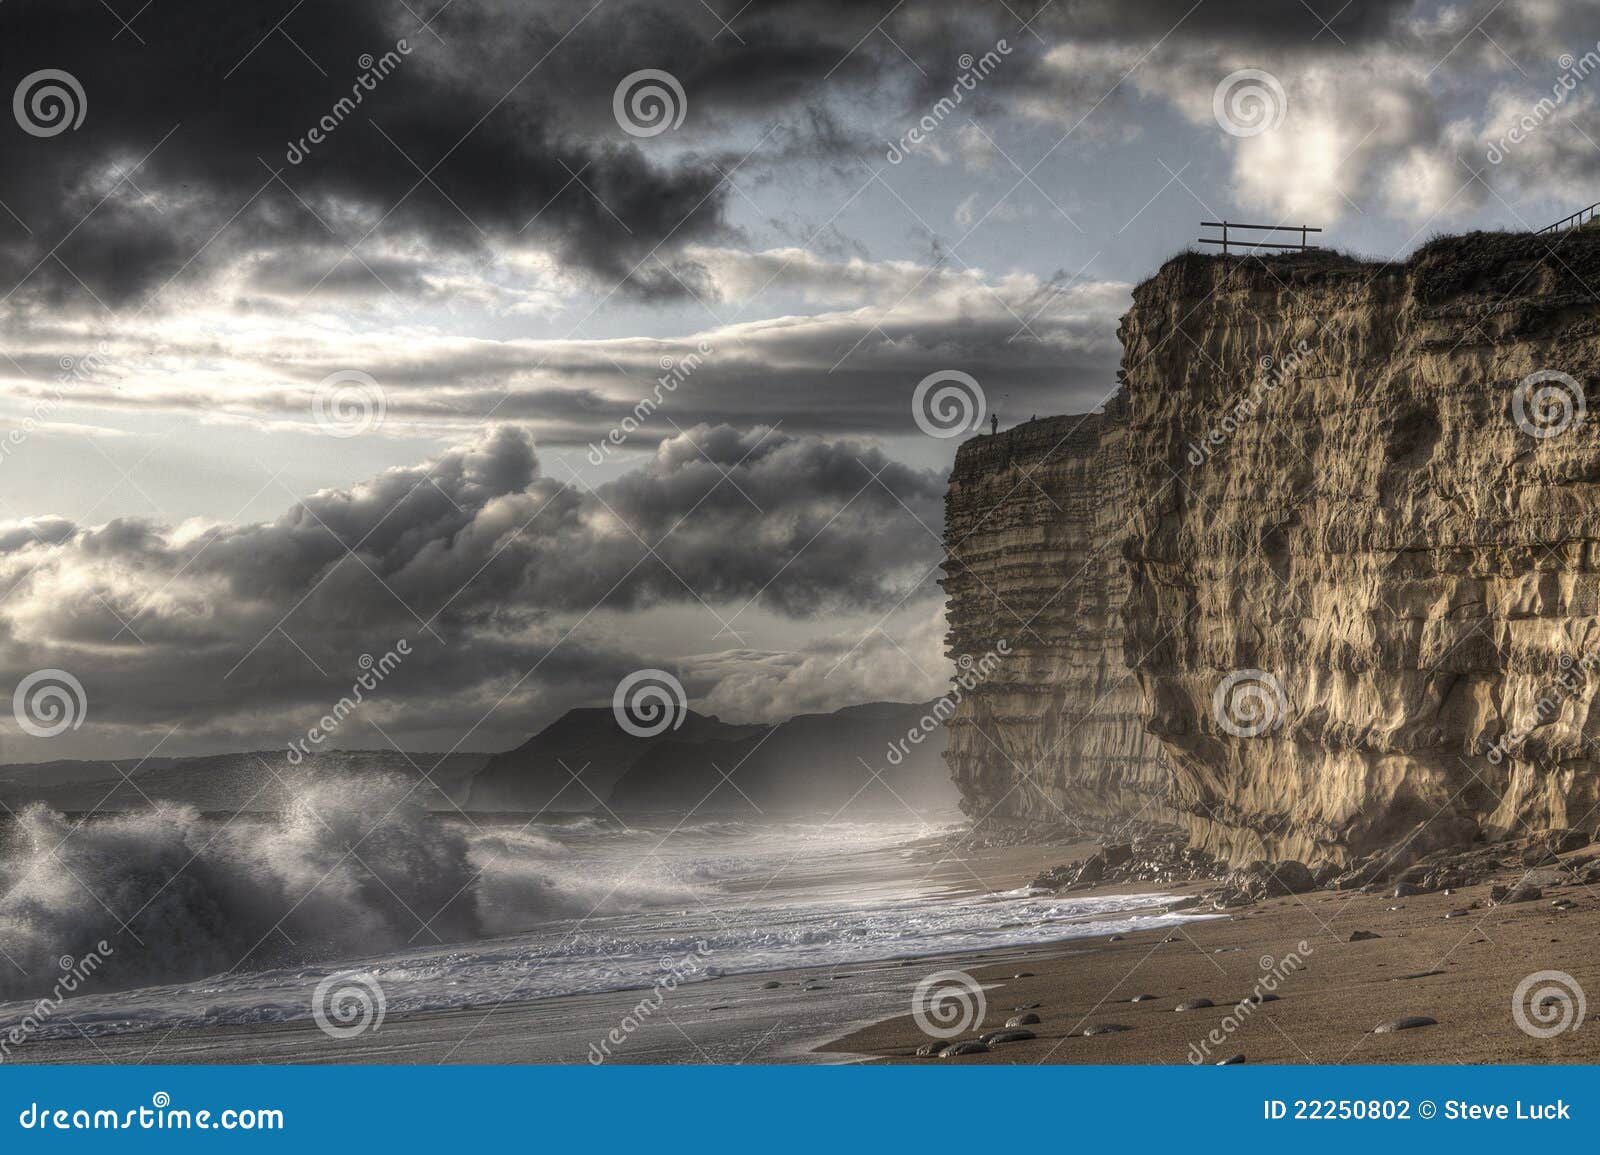 man on cliff